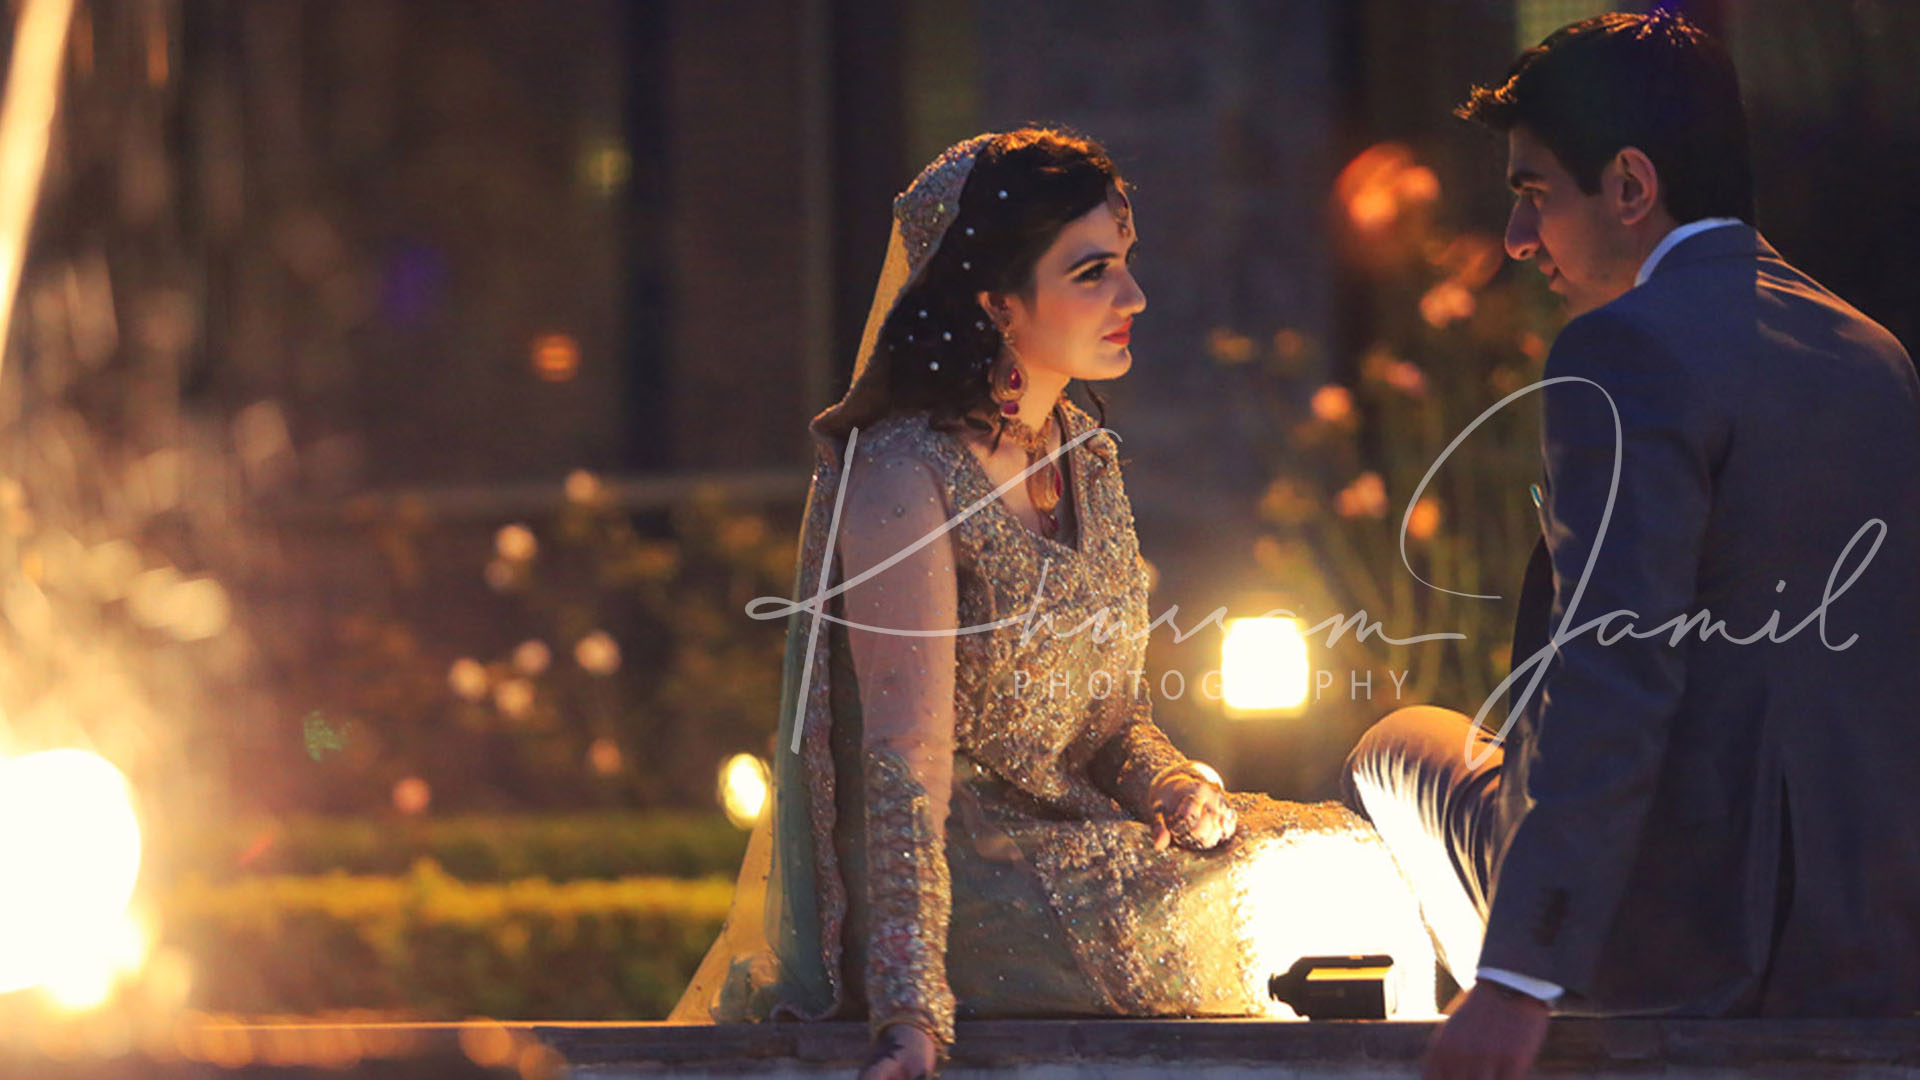 Pakistani Wedding photography | Wedding photography poses, Fun wedding  photography, Wedding photography